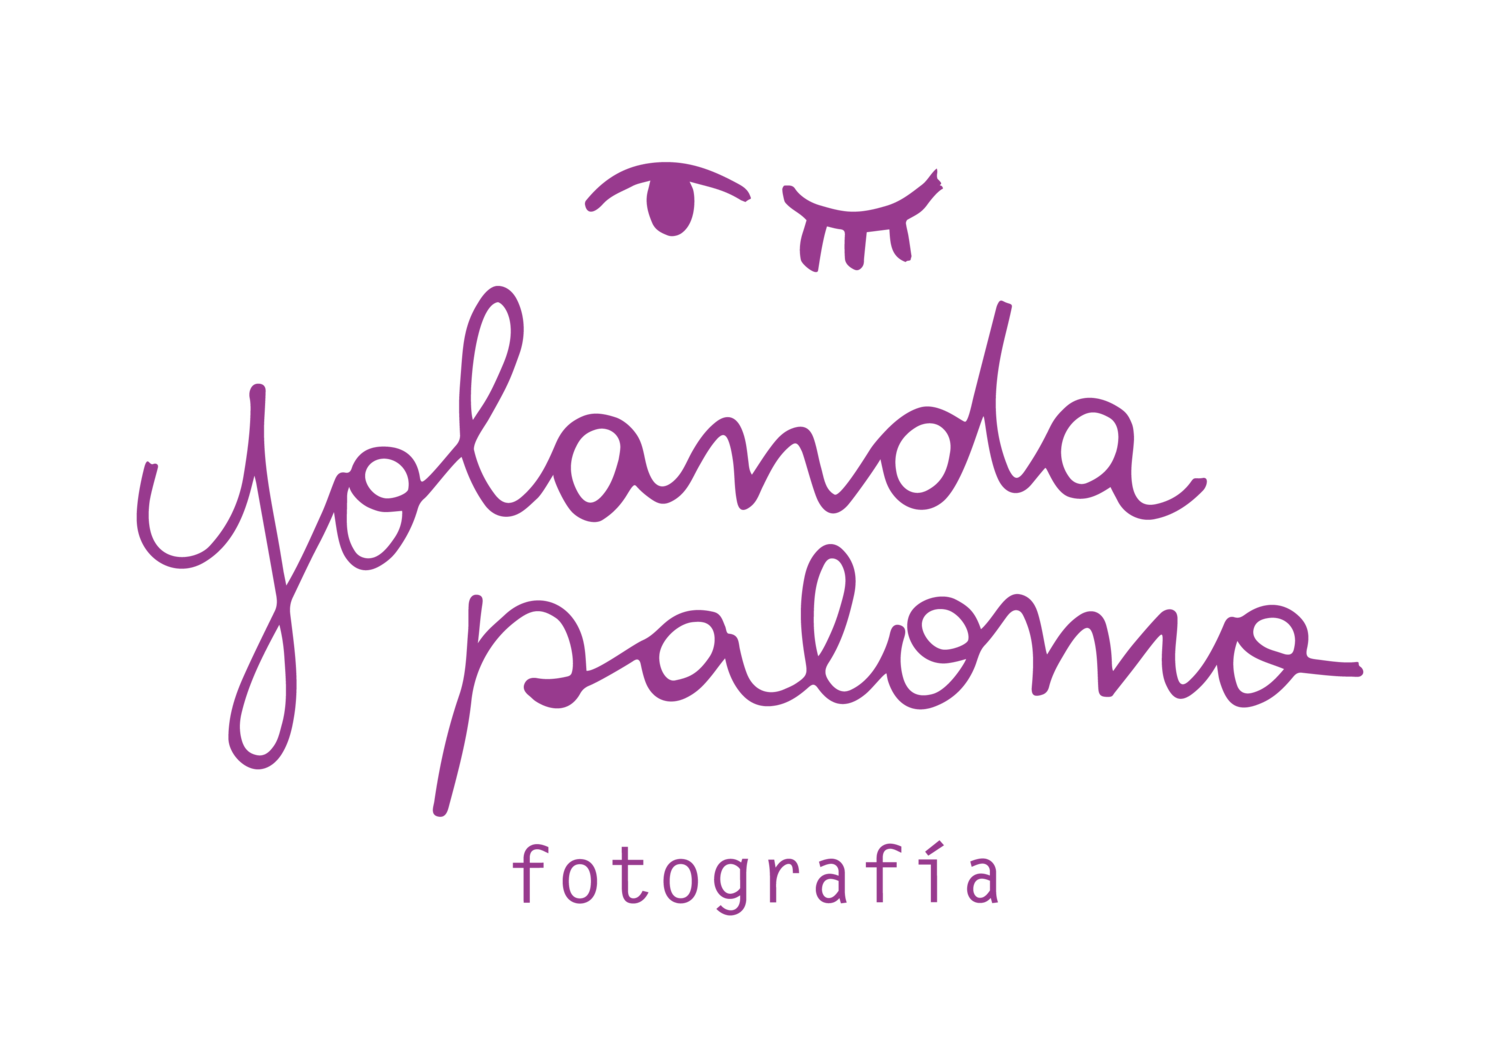 Yolanda Palomo | Fotografía